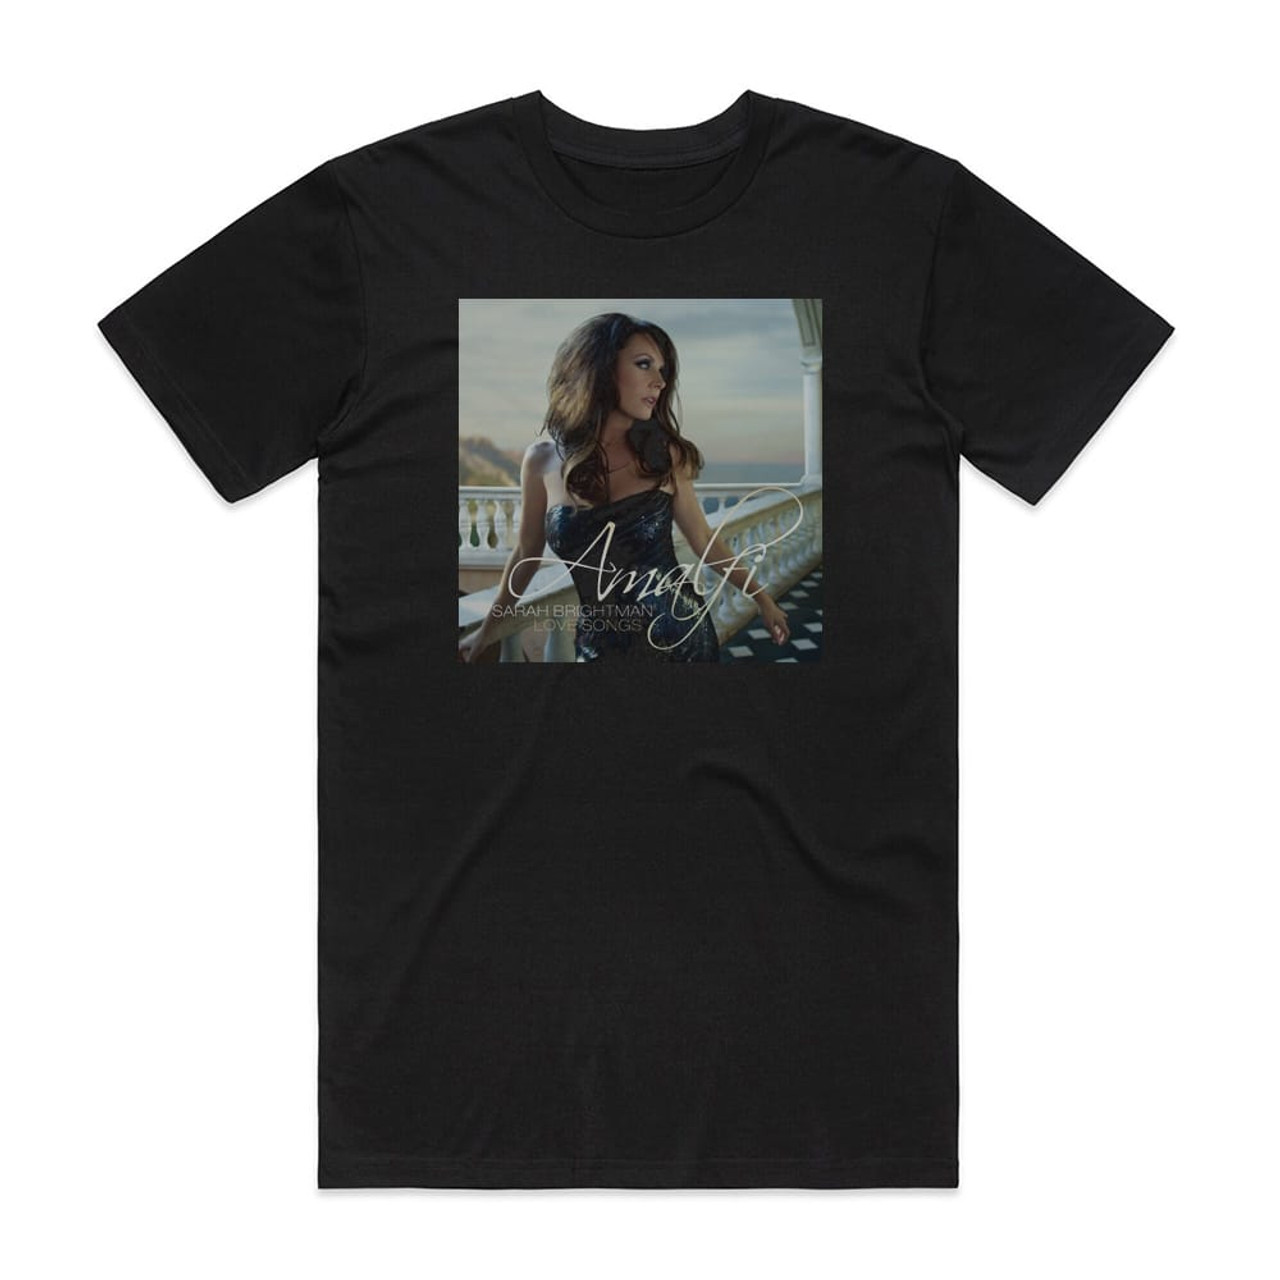 Sarah Brightman Amalfi Sarah Brightman Love Songs Album Cover T-Shirt Black